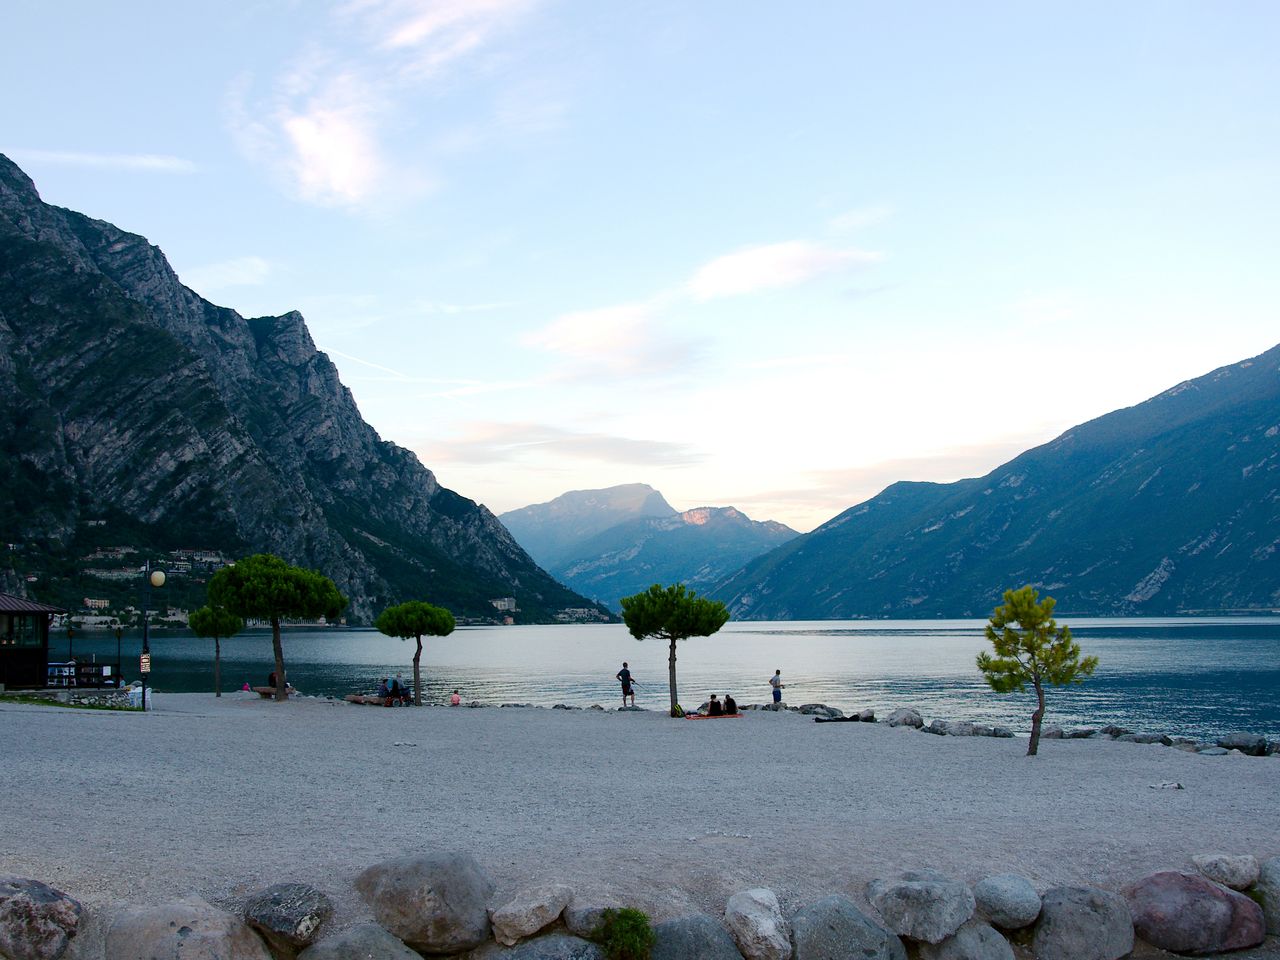 Panorama-Auszeit direkt am Gardasee - 4 Tage